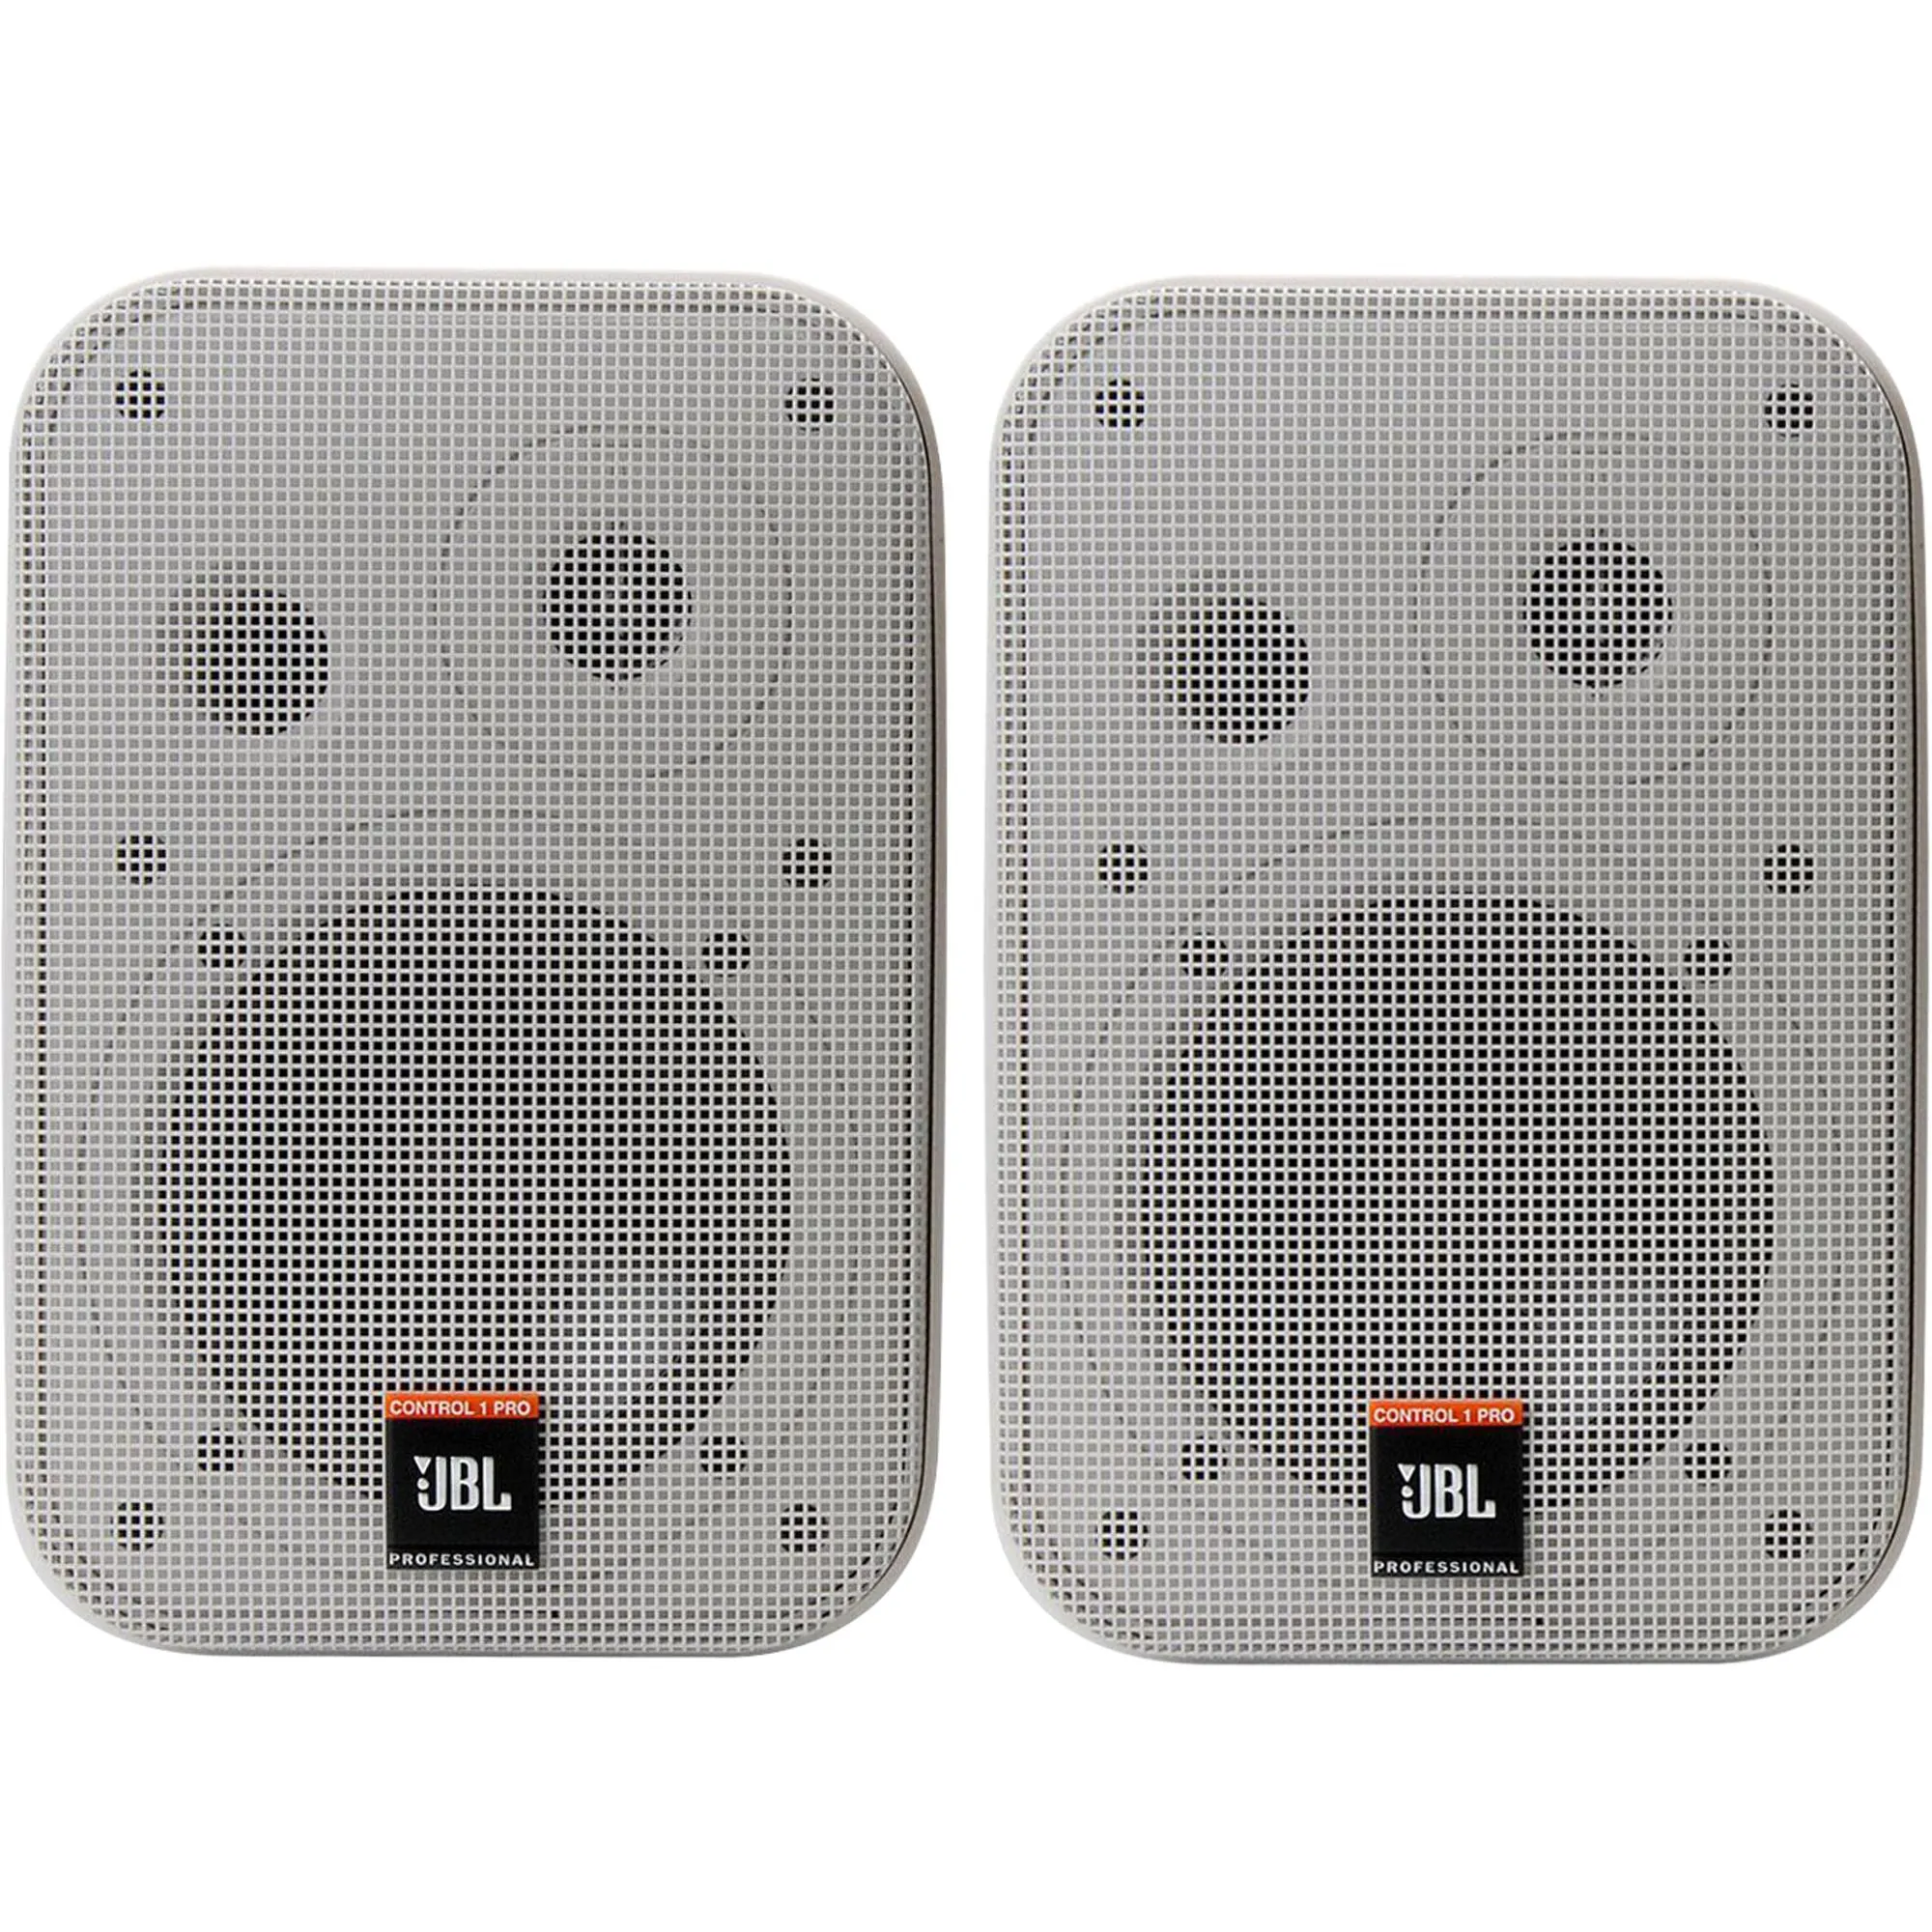 Caixa Acústica JBL Control 1 Pro Branca por 1.999,00 à vista no boleto/pix ou parcele em até 12x sem juros. Compre na loja Mundomax!